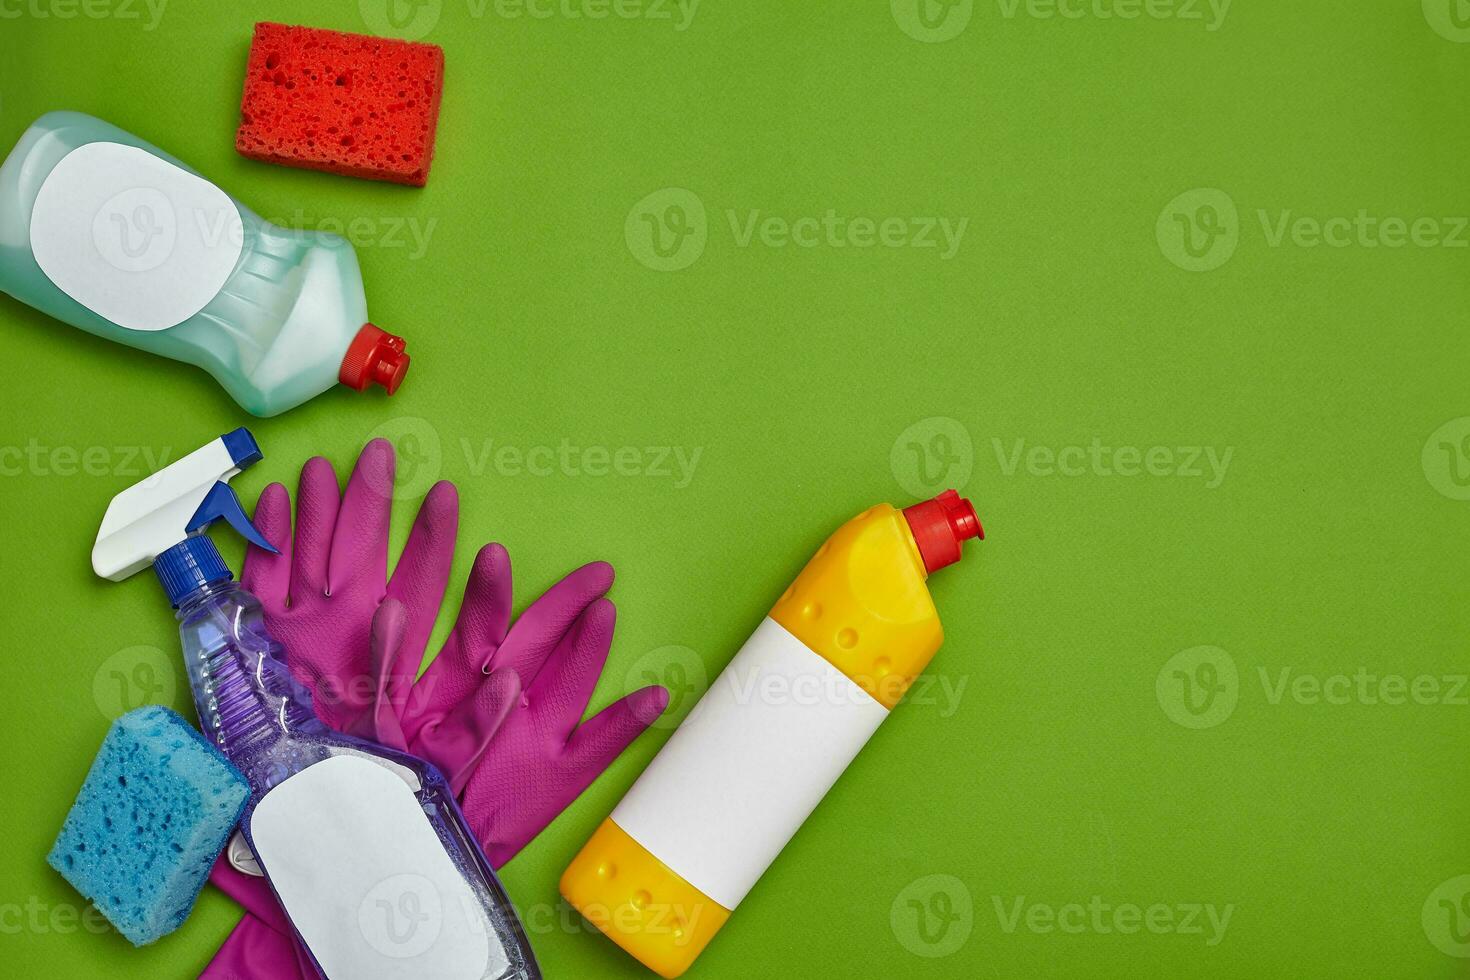 Waschmittel und Reinigung Zubehör auf ein Grün Hintergrund. Hauswirtschaft Konzept. foto